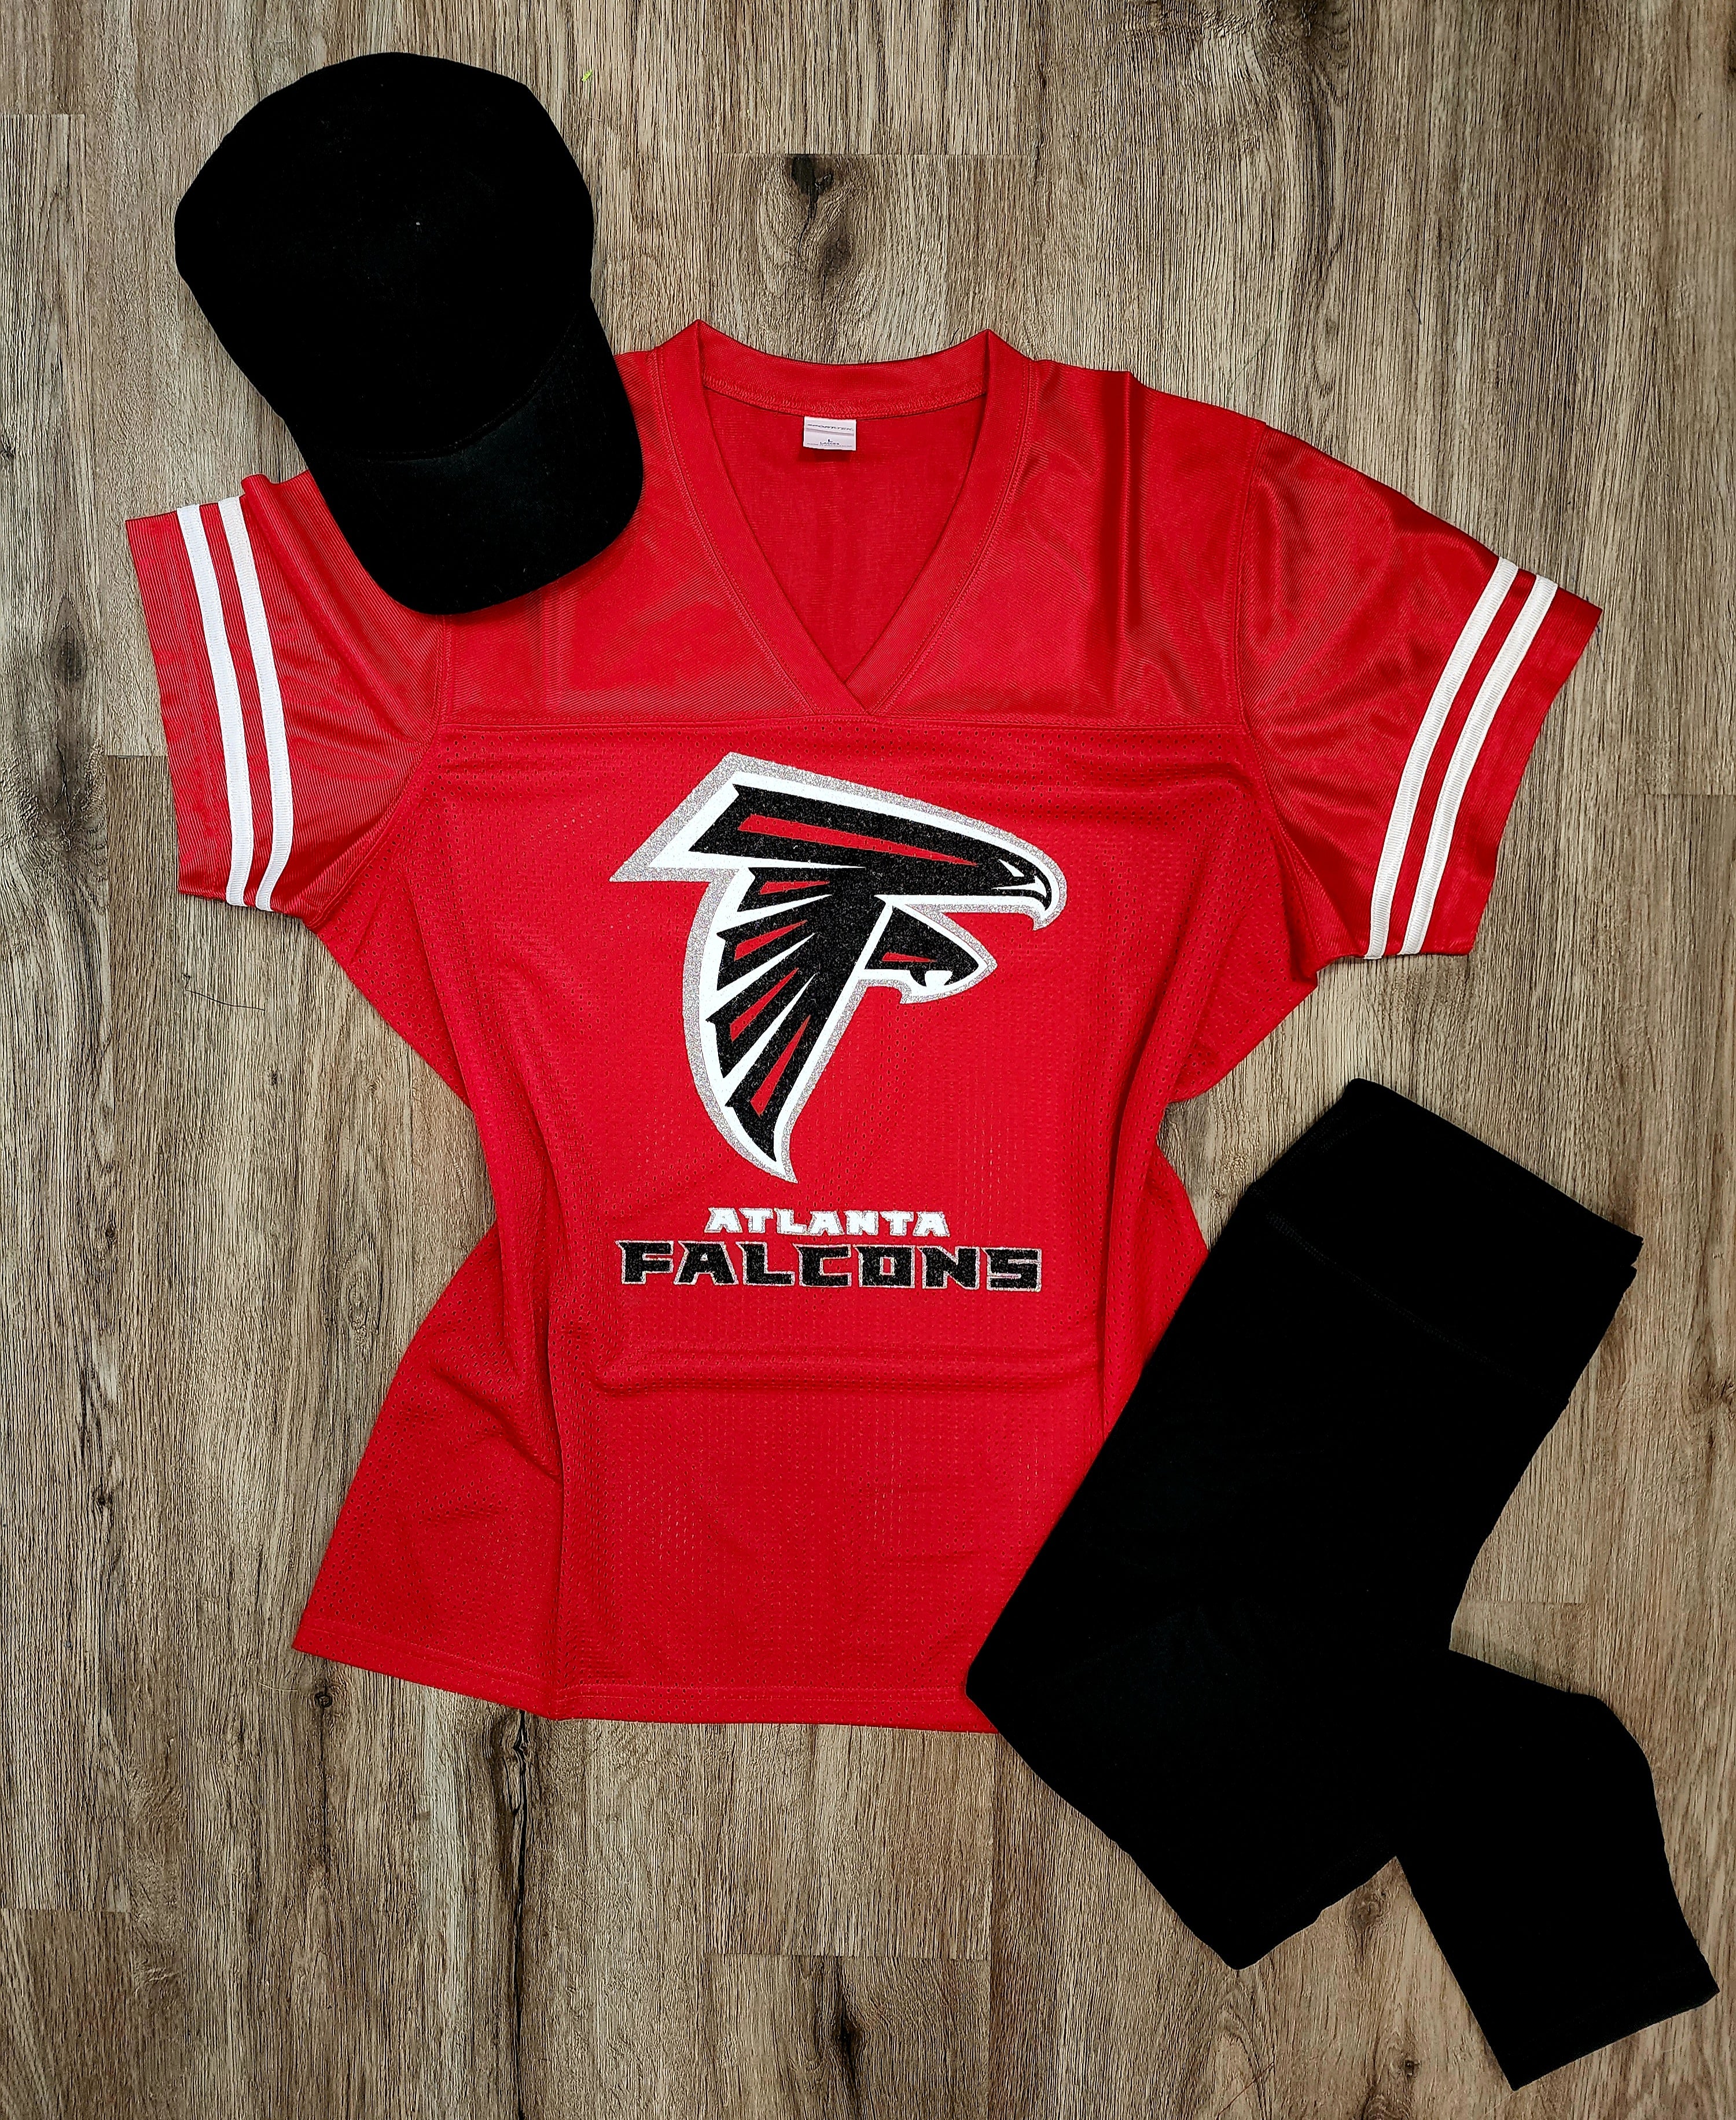 Lulu Grace Designs Atlanta Falcons Glitter Jersey Shirt or Tank Top: Football Fan Gear & Apparel for Women 3T / Ladies Mesh Jersey